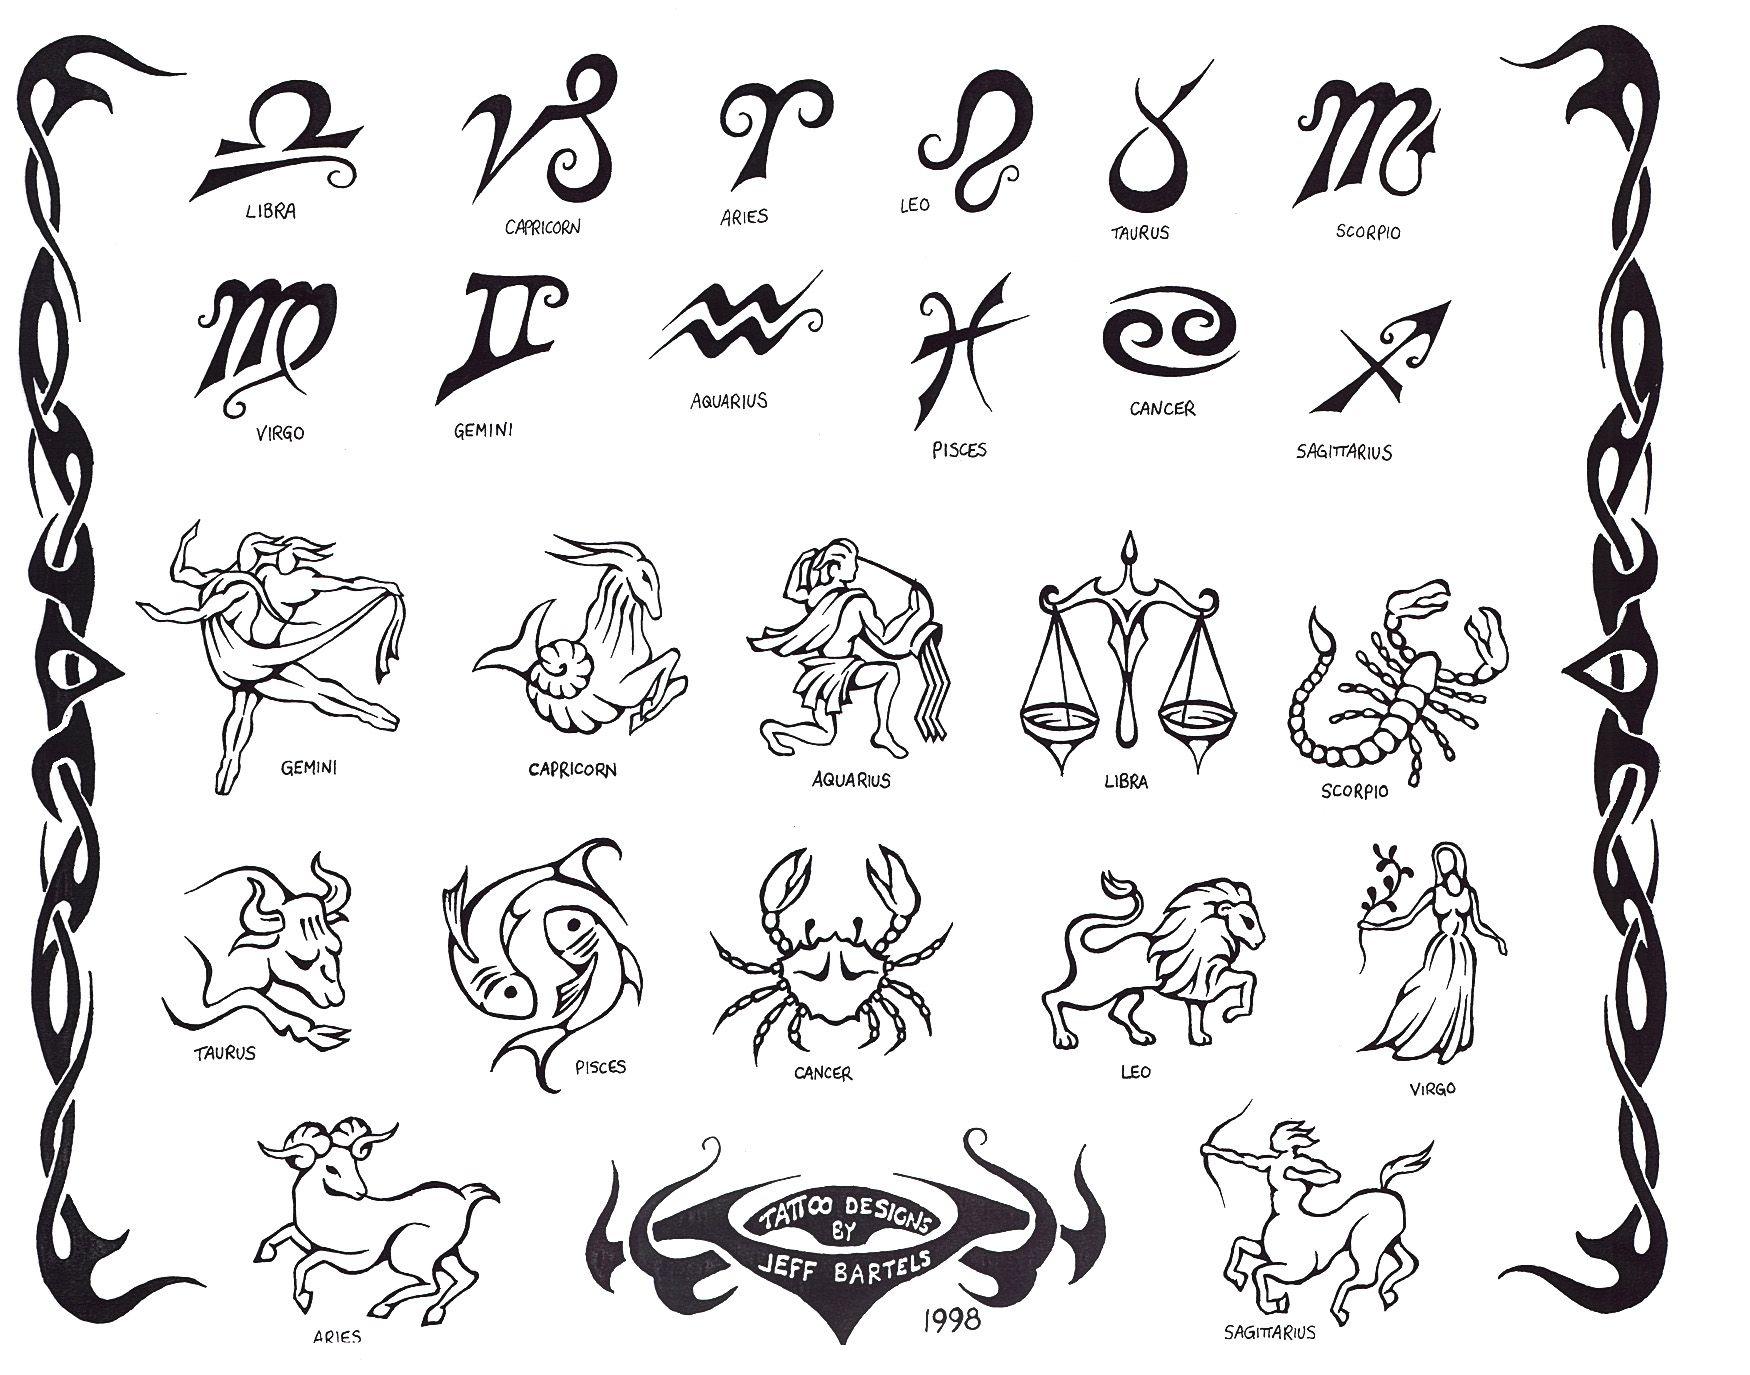 ancient greek symbols tattoos